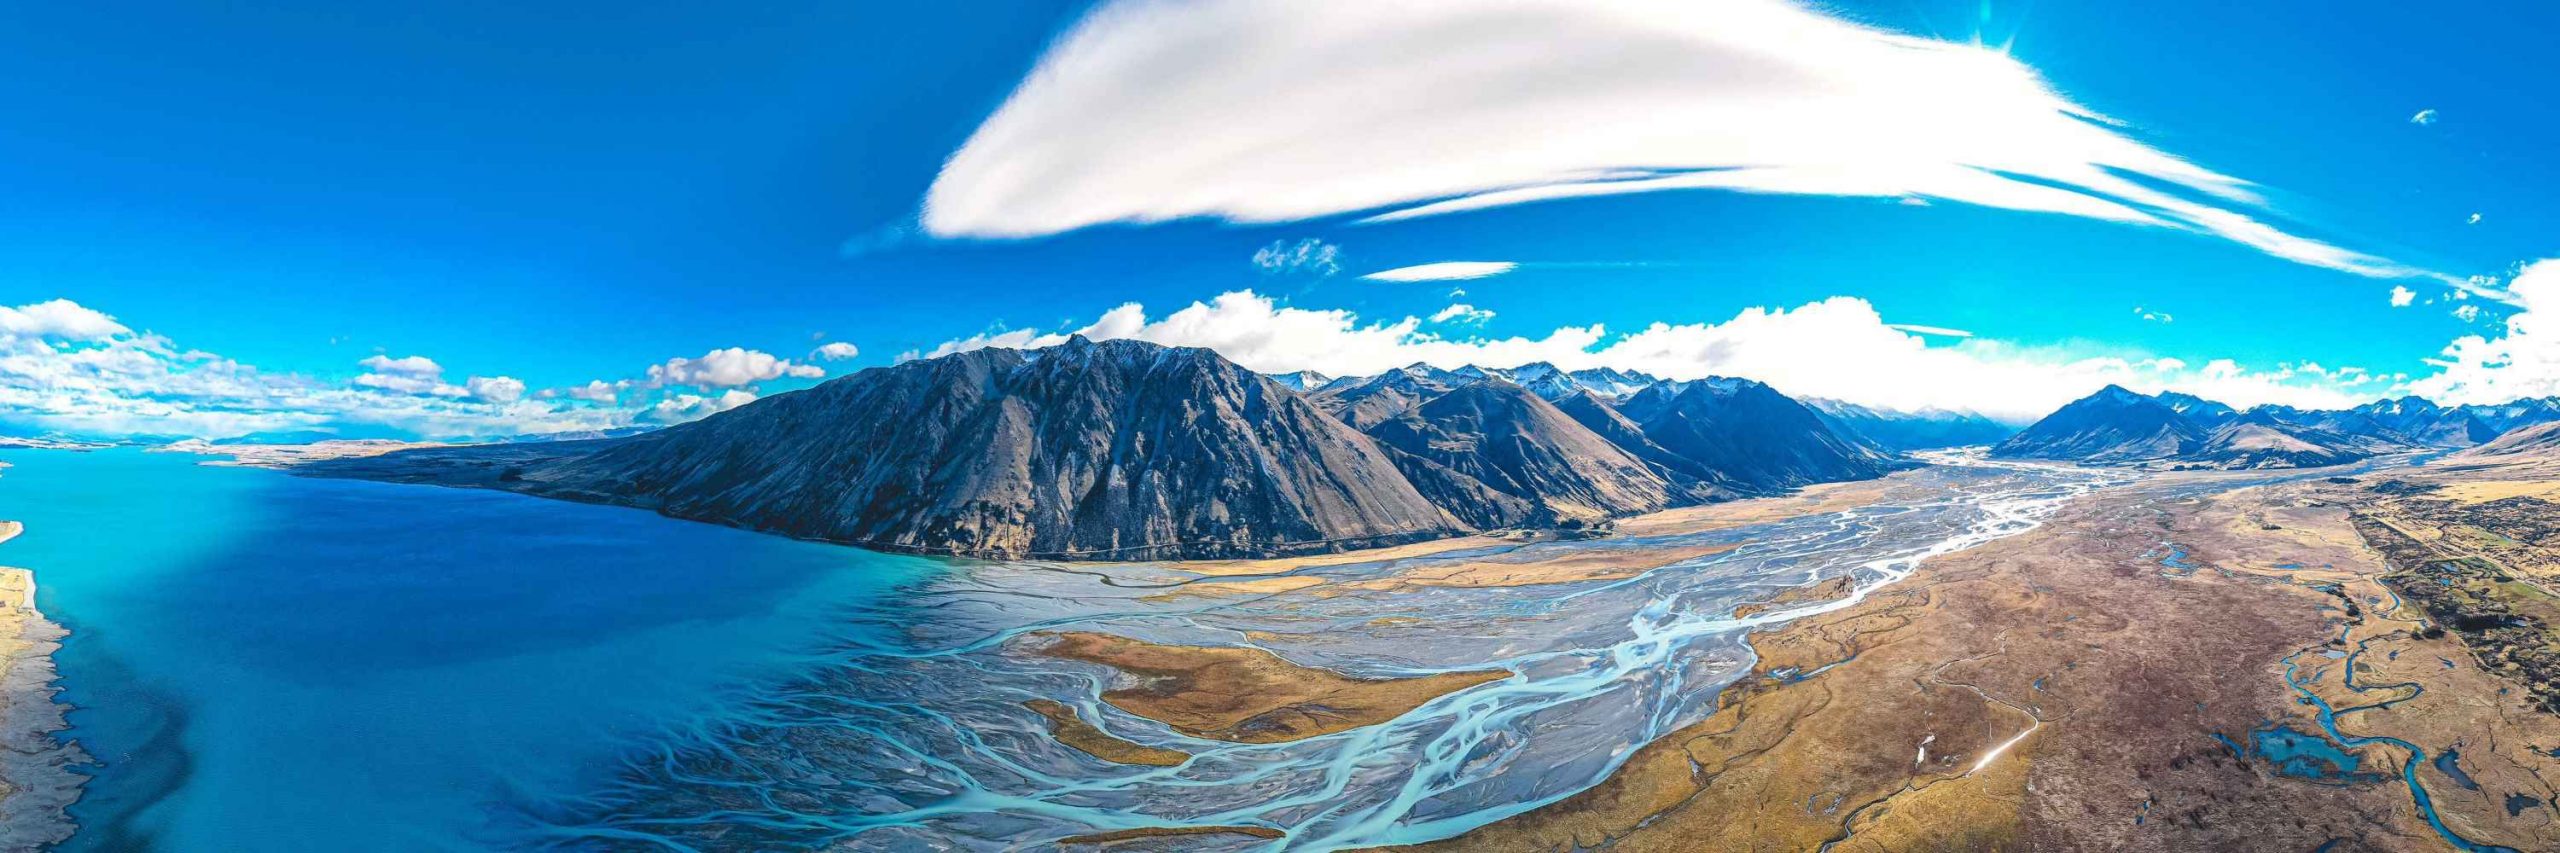 NZ Lake tekapo